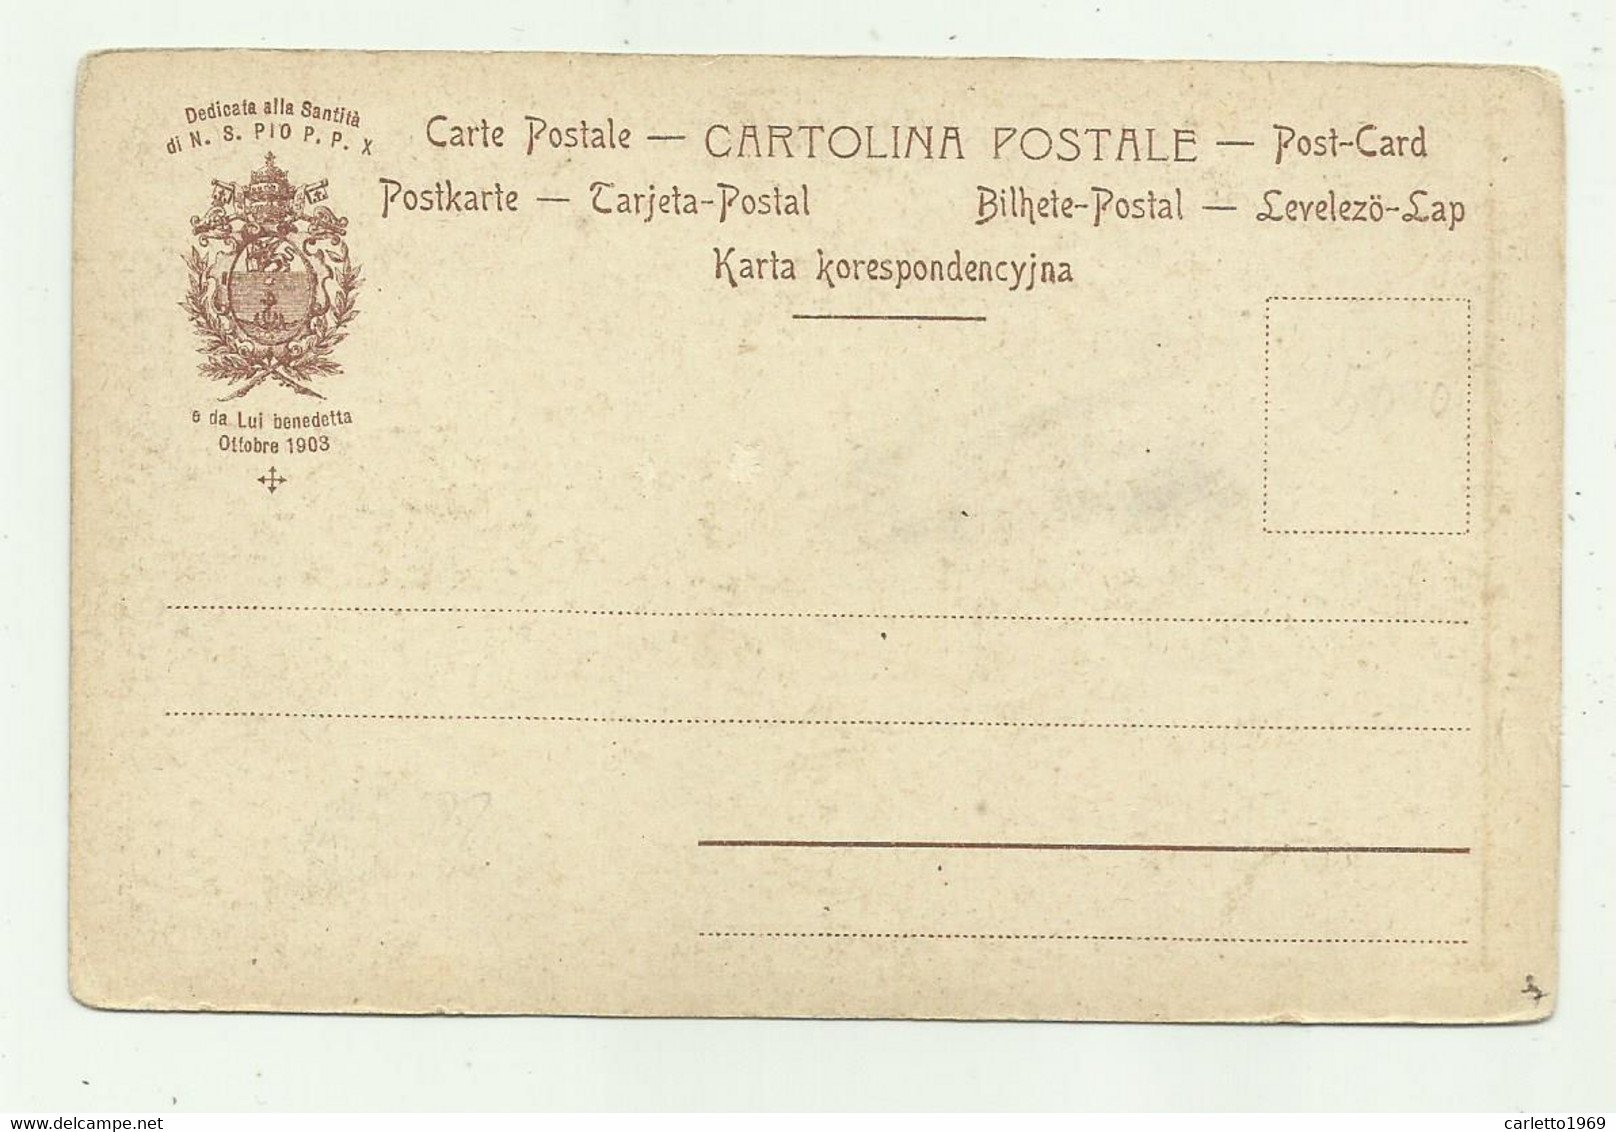 S.ELEUTERIO  MARTIRE DELL'EPIRO  - CARTOLINA DEDICATA A PIO P.P X DA LUI BENEDETTA OTTOBRE 1903 -   NV  FP - Santi